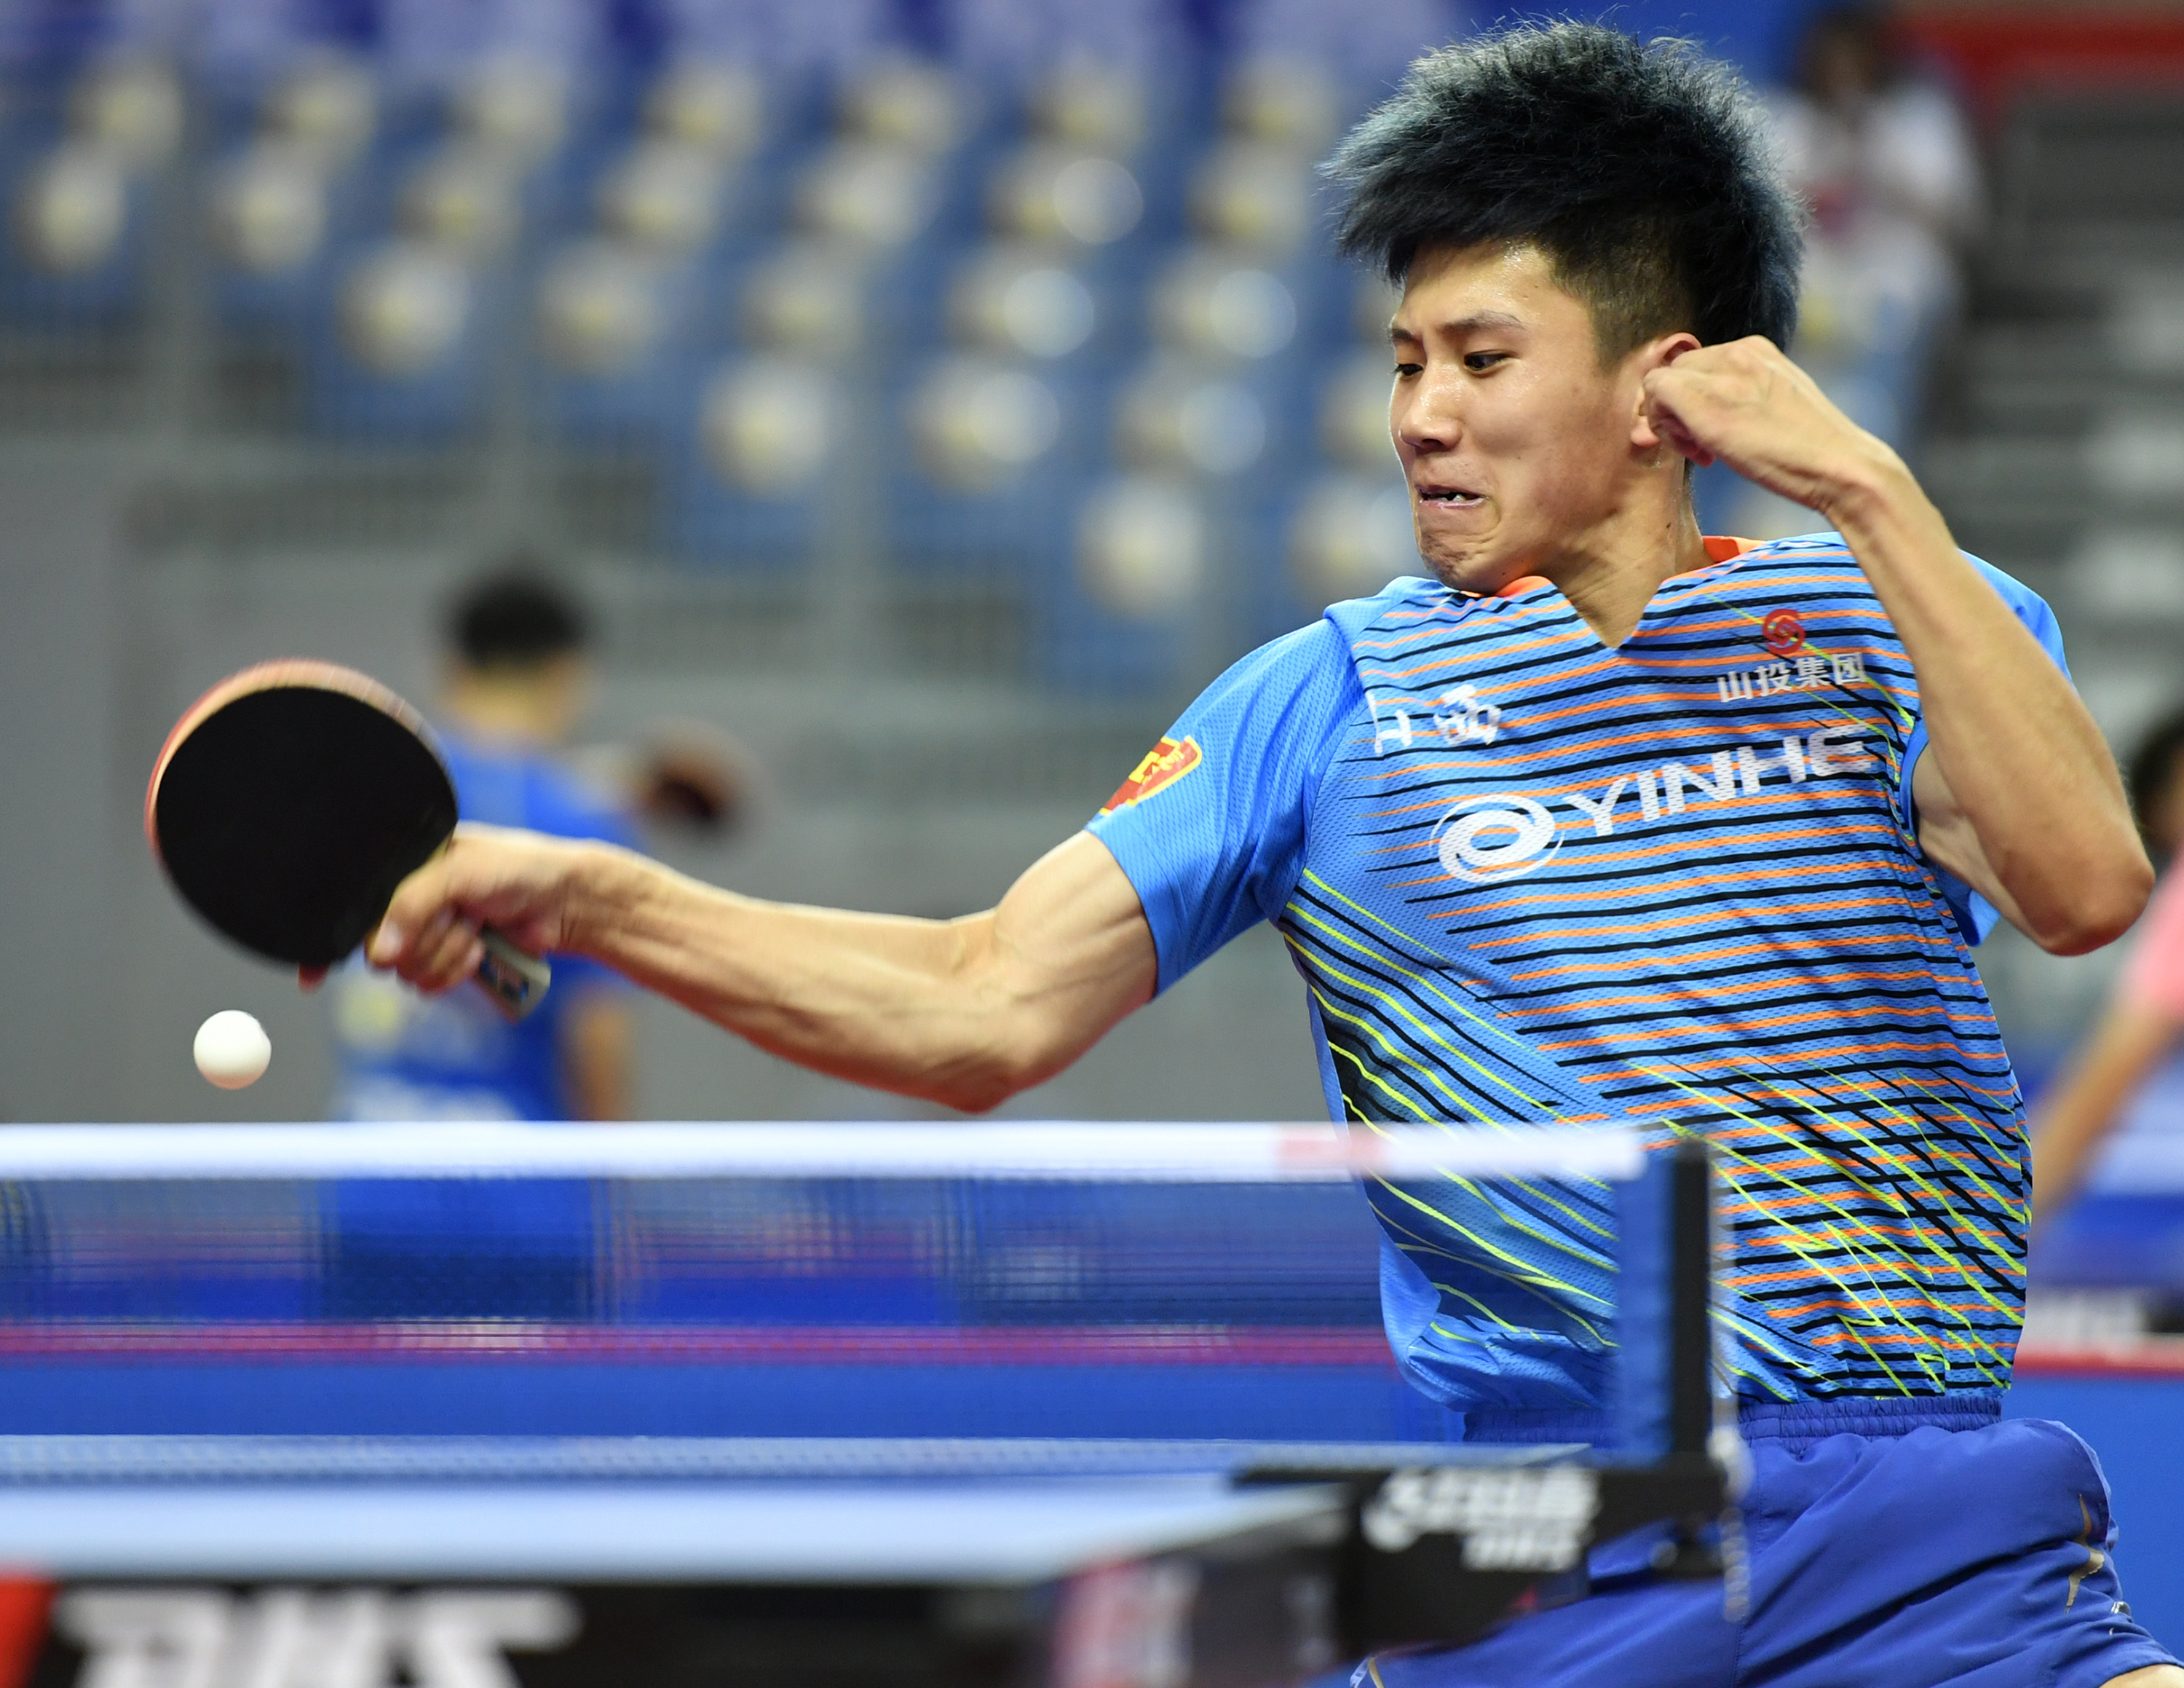 当日,在天津武清举行的2019年全国乒乓球锦标赛男子单打预选赛第1轮